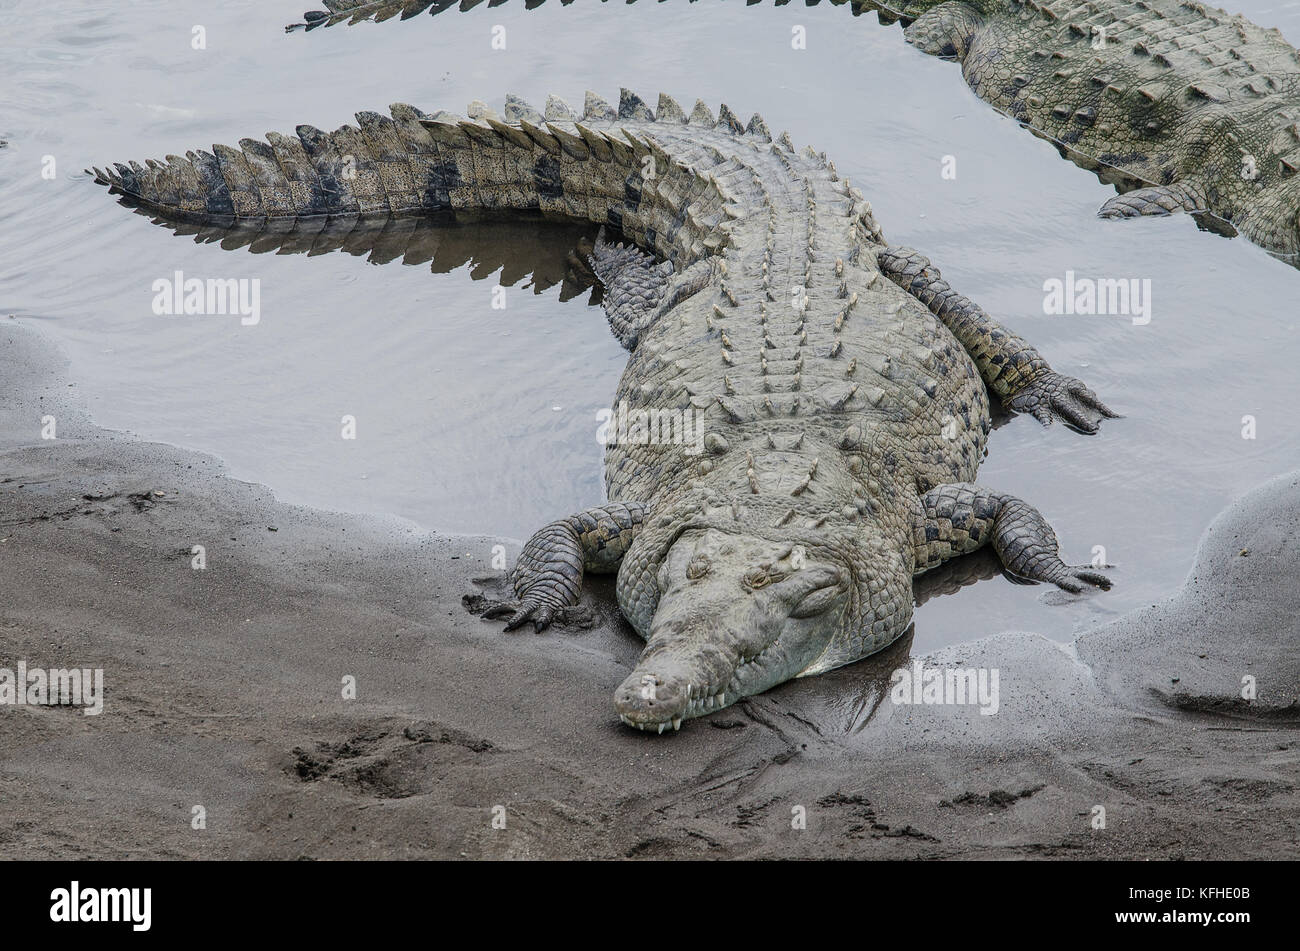 Krokodil in einem Fluss von oben gesehen liegen Stockfoto